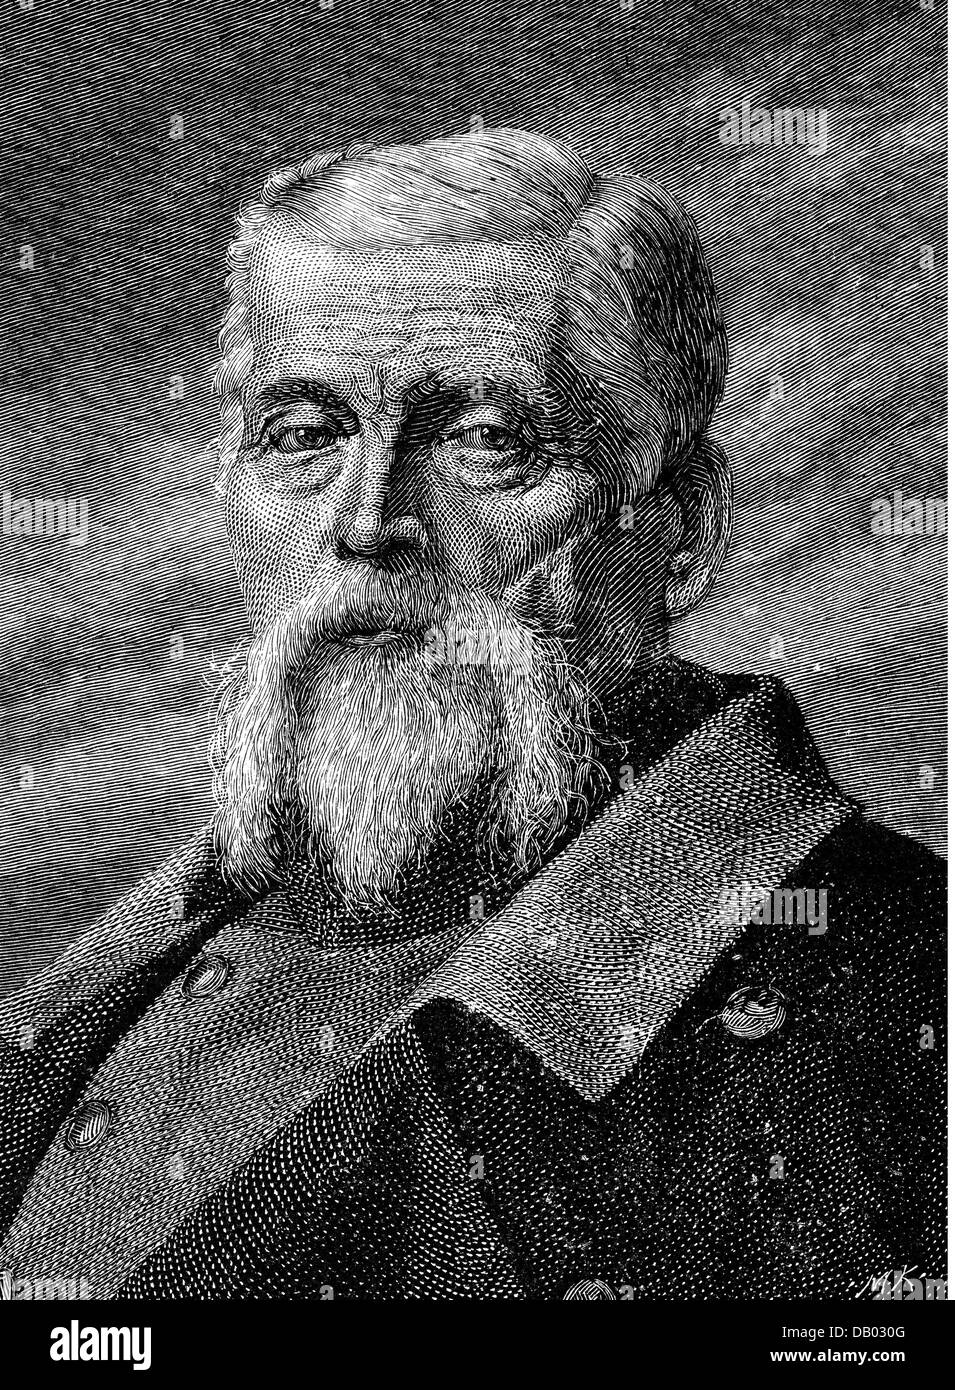 Tann-Rathsamhausen, Ludwig Freiherr von der, 18.6.1815 - 26.4.1881, generale bavarese, comandante generale del i corpo dell'esercito bavarese 1869 - 1881, ritratto, età avanzata, incisione del legno, circa 1880, Foto Stock